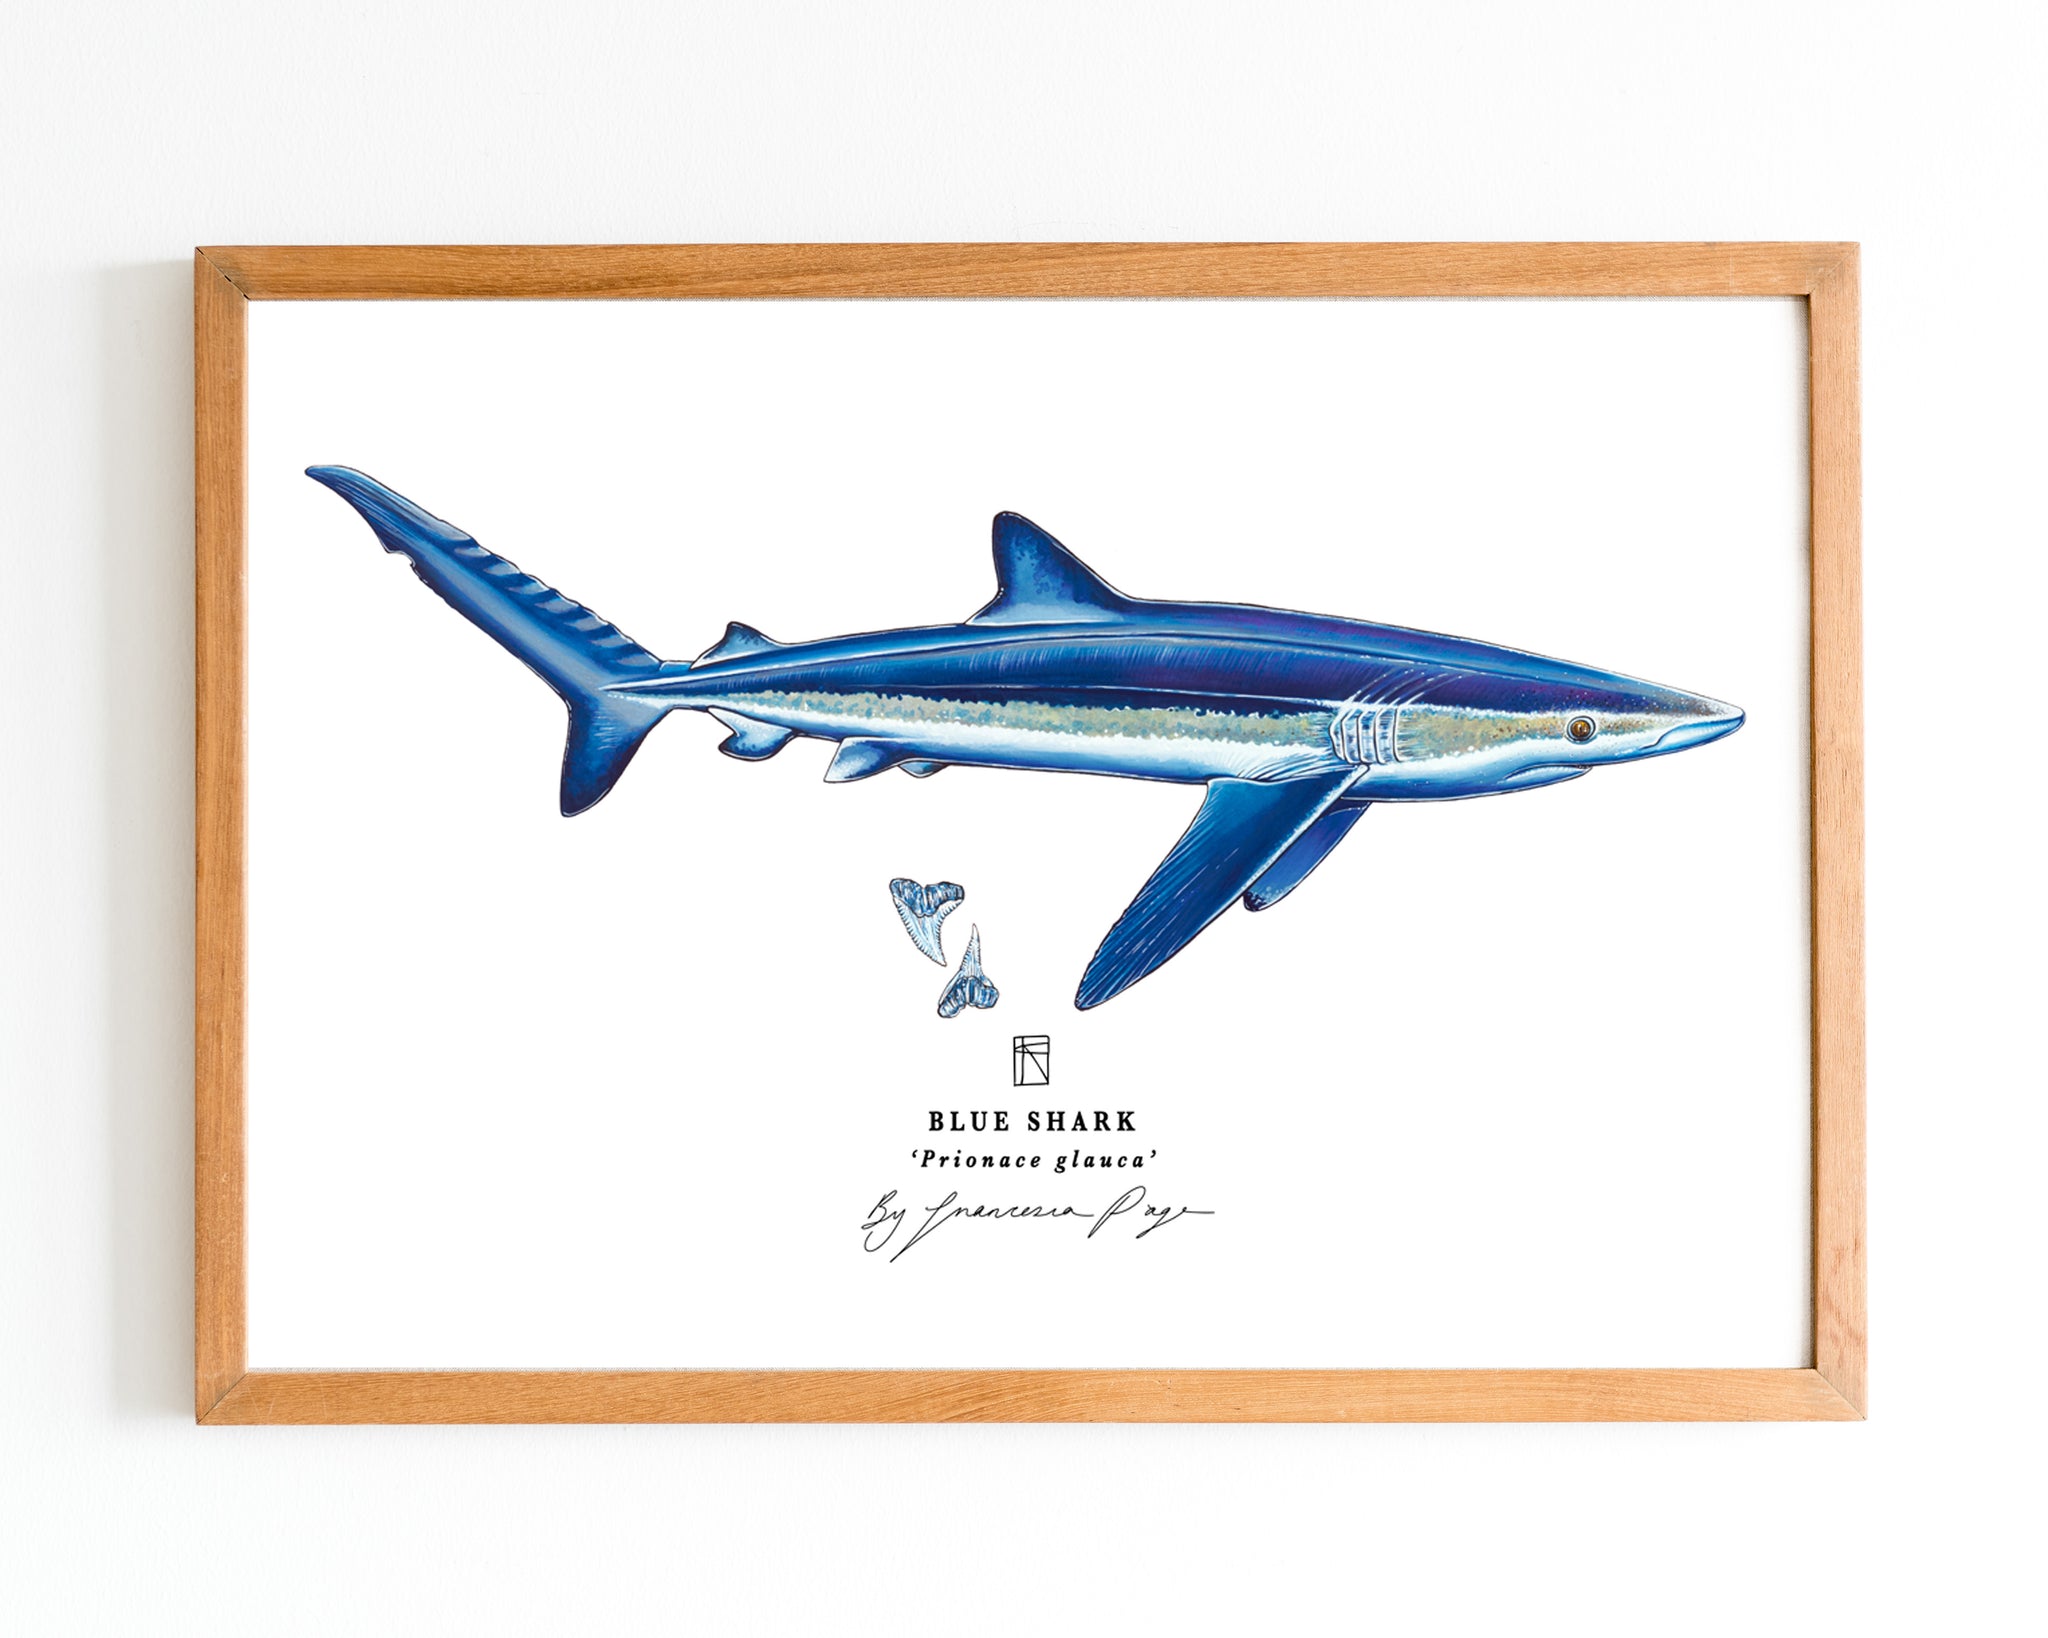 Sharks, an art print by Bera - INPRNT